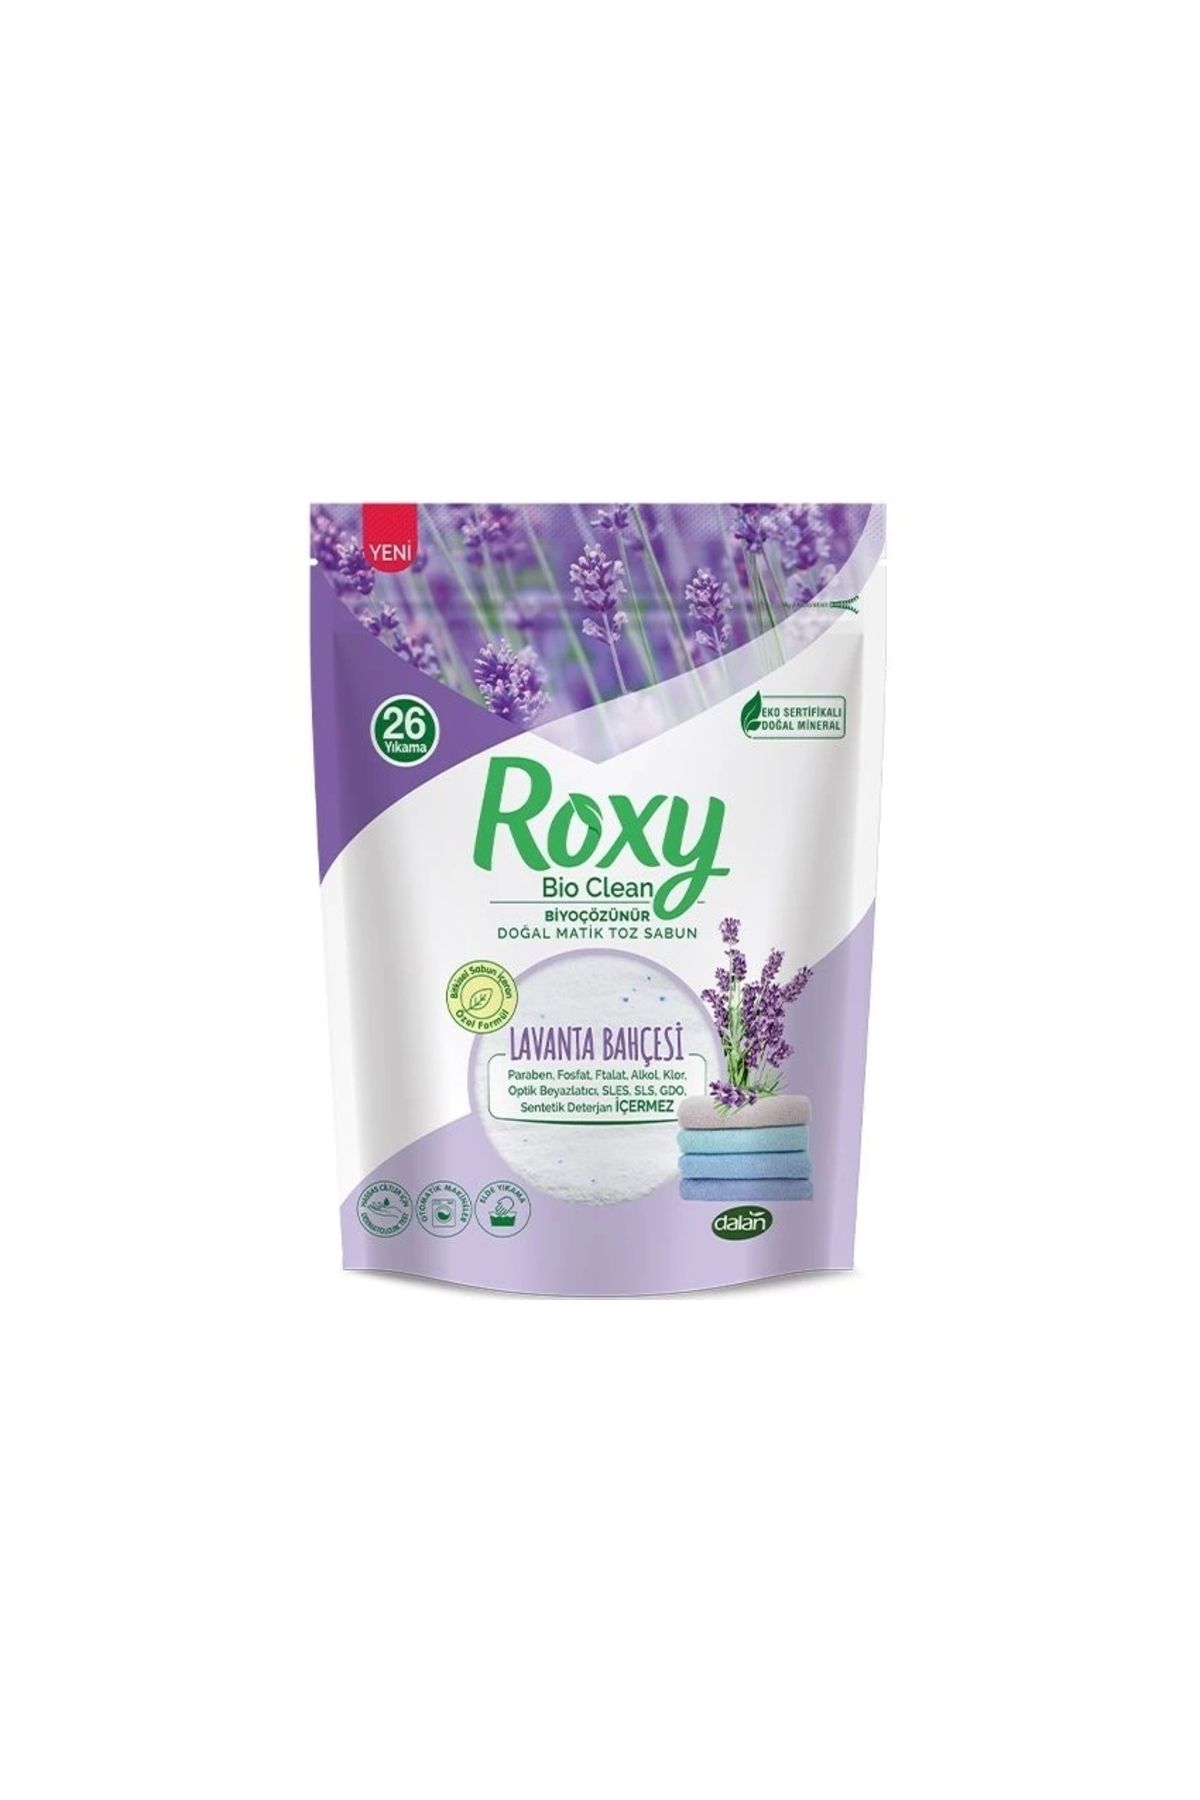 Dalan Roxy Bio Clean Doğal Matik Toz Sabun Lavanta Bahçesi 800 gr